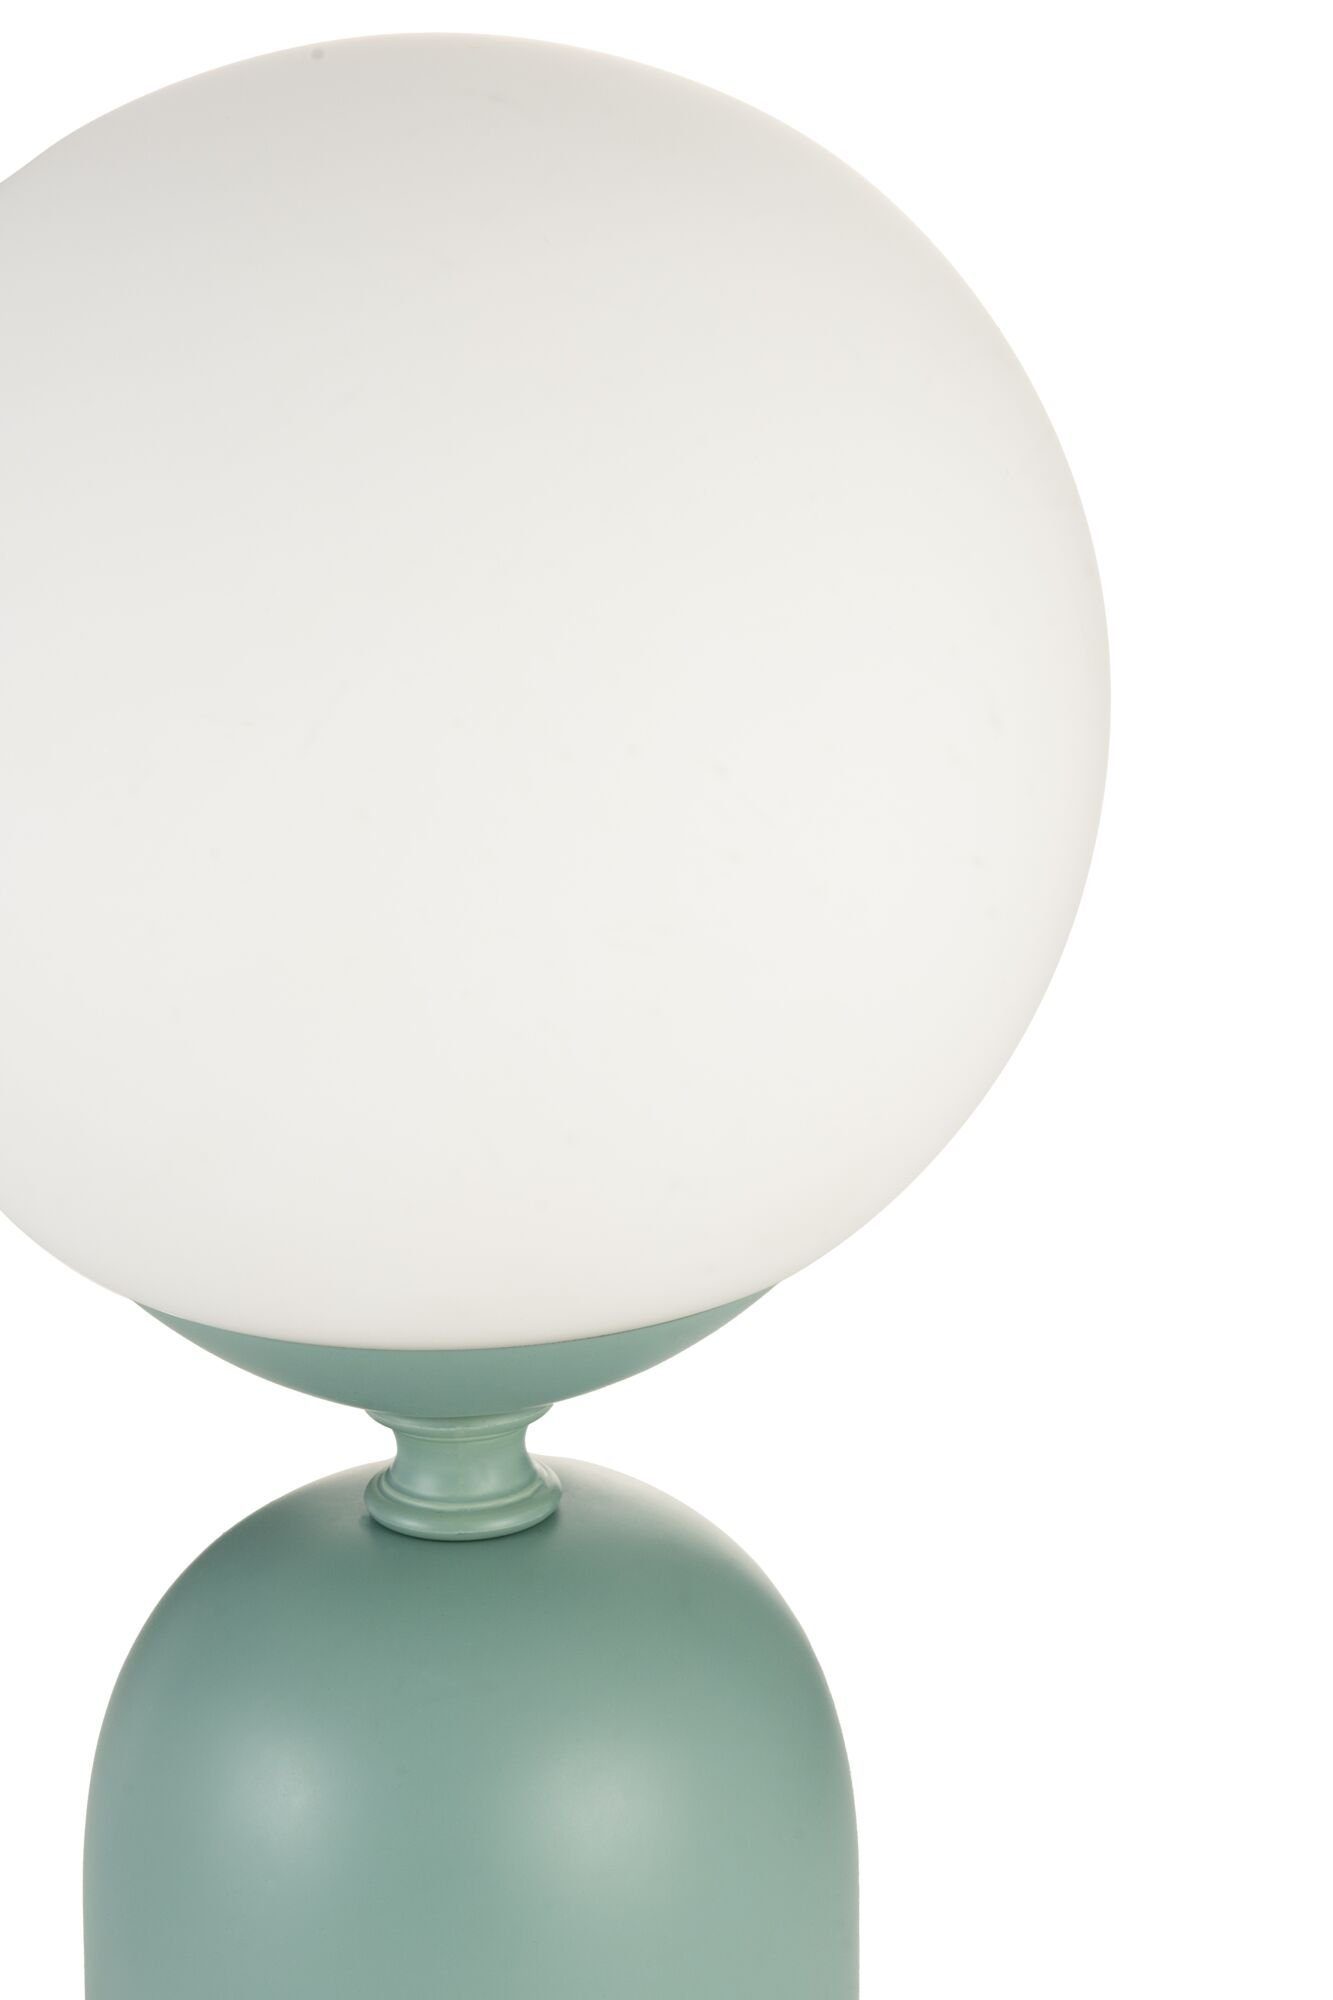 20W ohne Charm Grün/weiß Tischleuchte Leuchtmittel, Glowing max Pauleen Keramik, E14